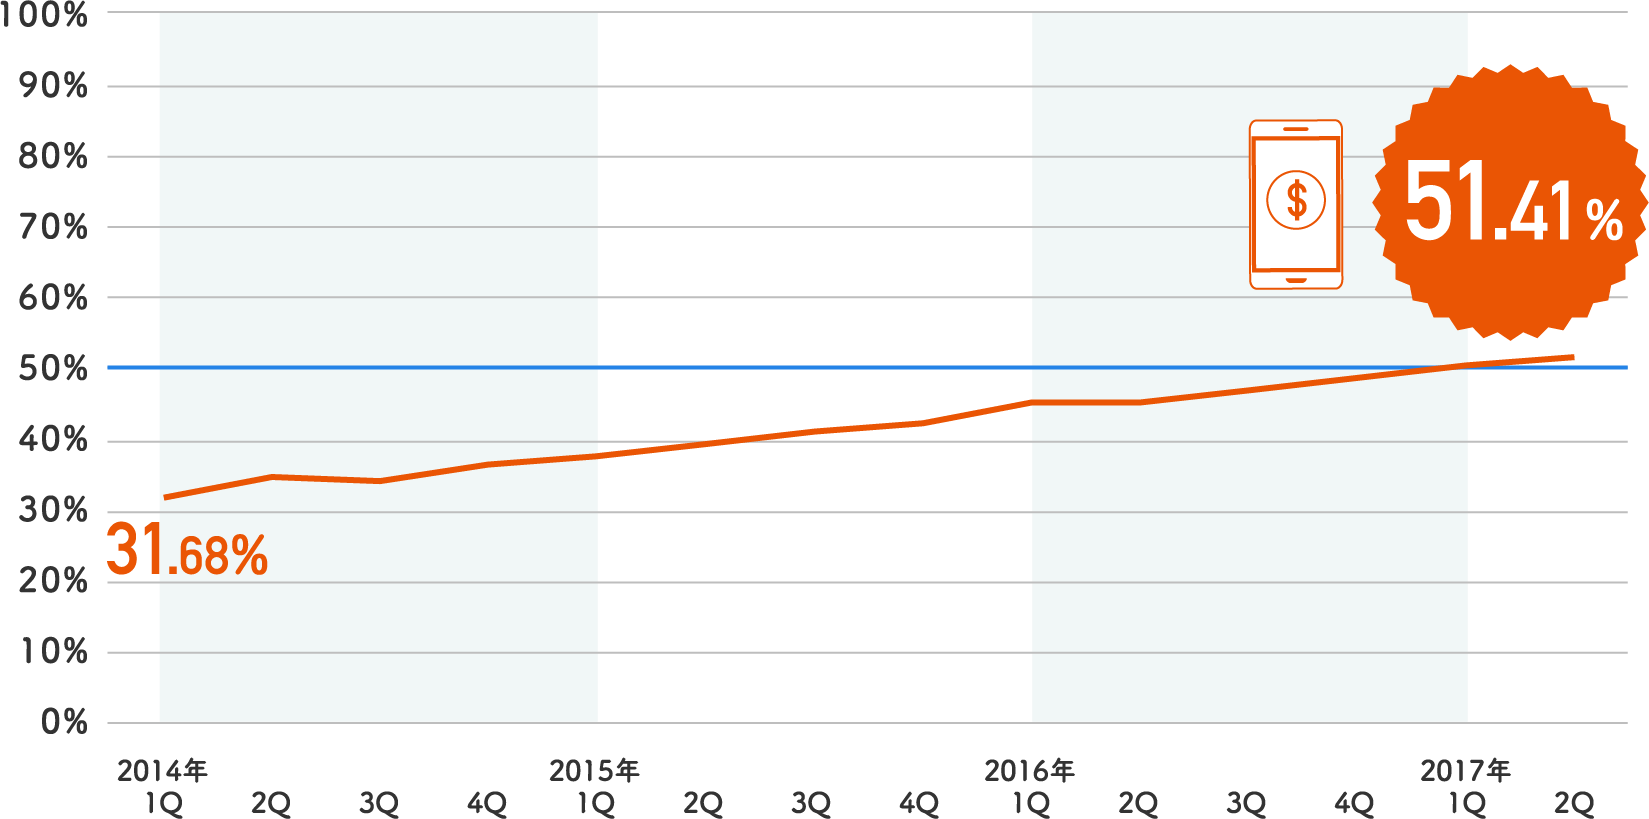 スマートフォン決済額の割合（2014年第1四半期〜2017年第2四半期）は31.68％から51.41％に推移